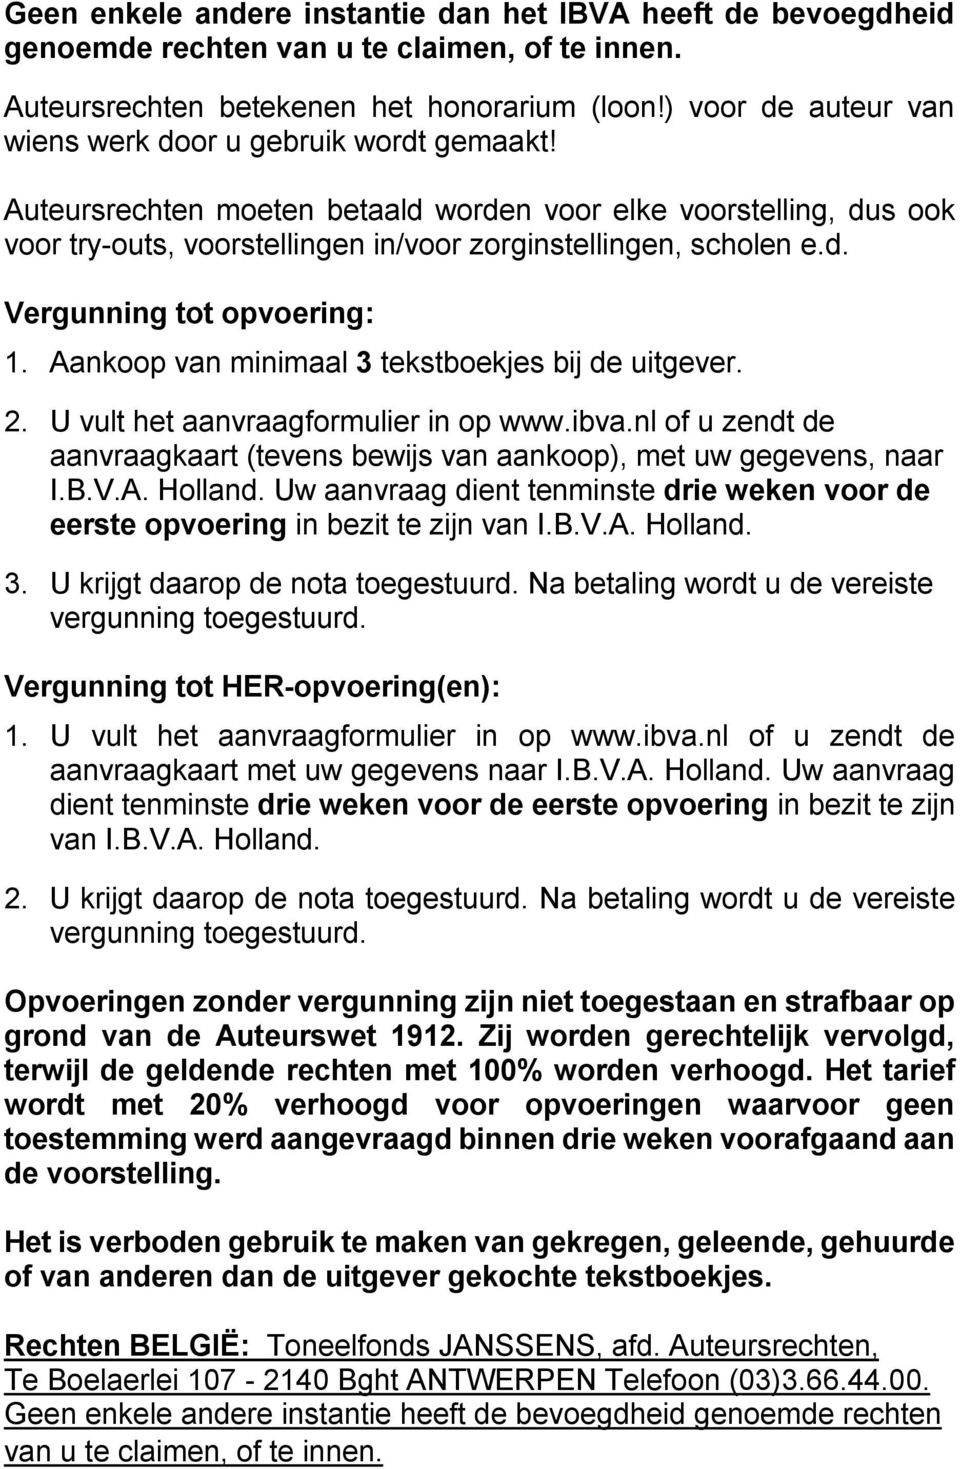 Aankoop van minimaal 3 tekstboekjes bij de uitgever. 2. U vult het aanvraagformulier in op www.ibva.nl of u zendt de aanvraagkaart (tevens bewijs van aankoop), met uw gegevens, naar I.B.V.A. Holland.